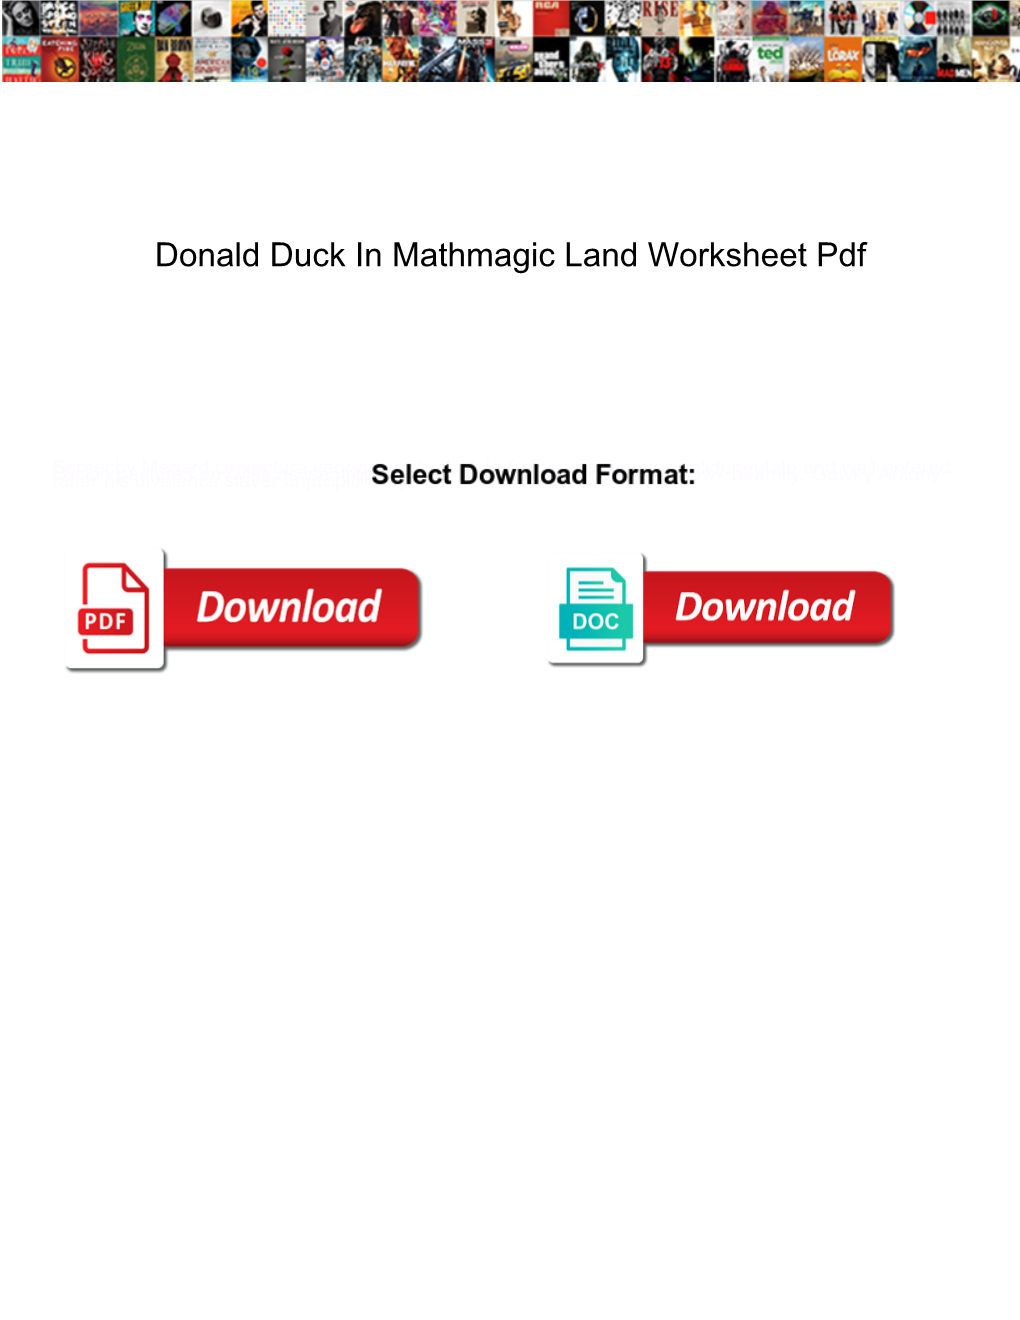 donald-duck-in-mathmagic-land-worksheet-pdf-docslib